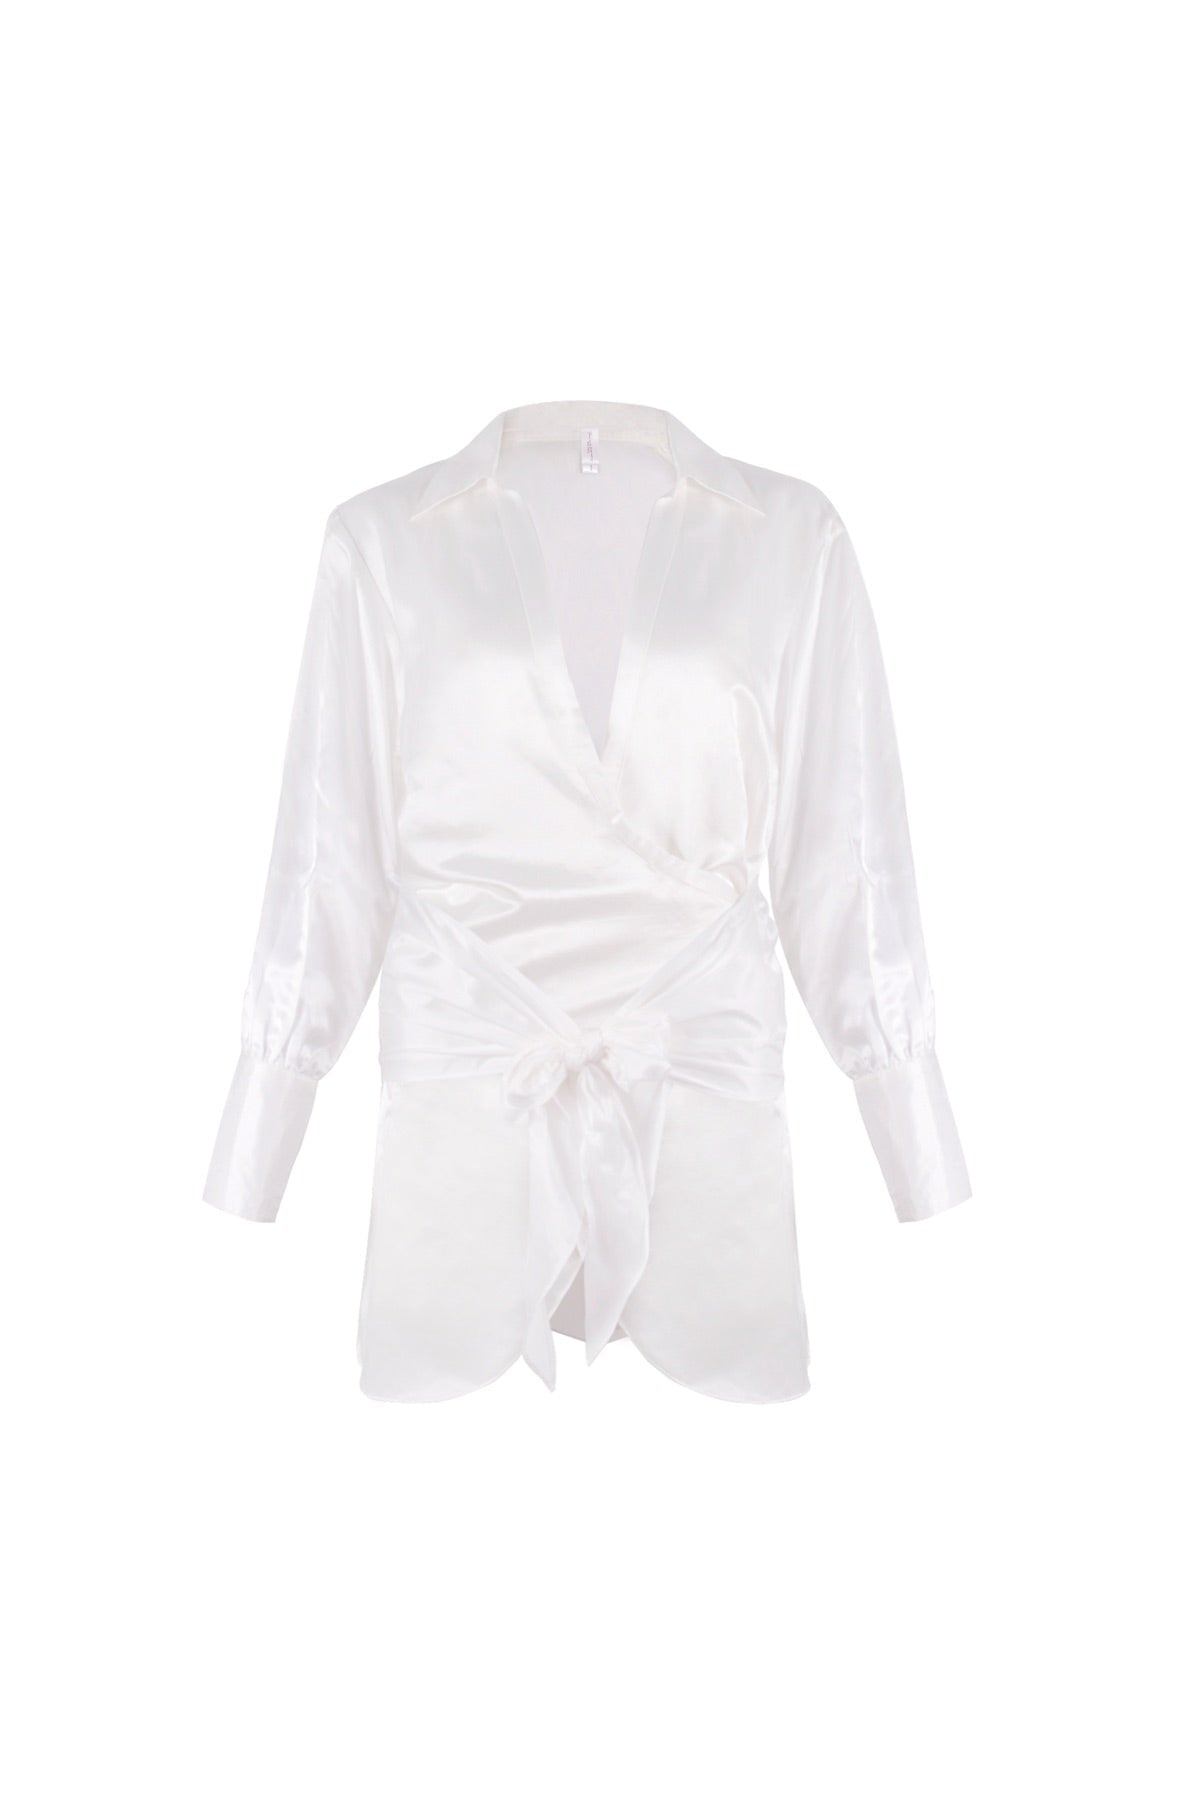 APPAREL - Serene Shirt Dress (White)